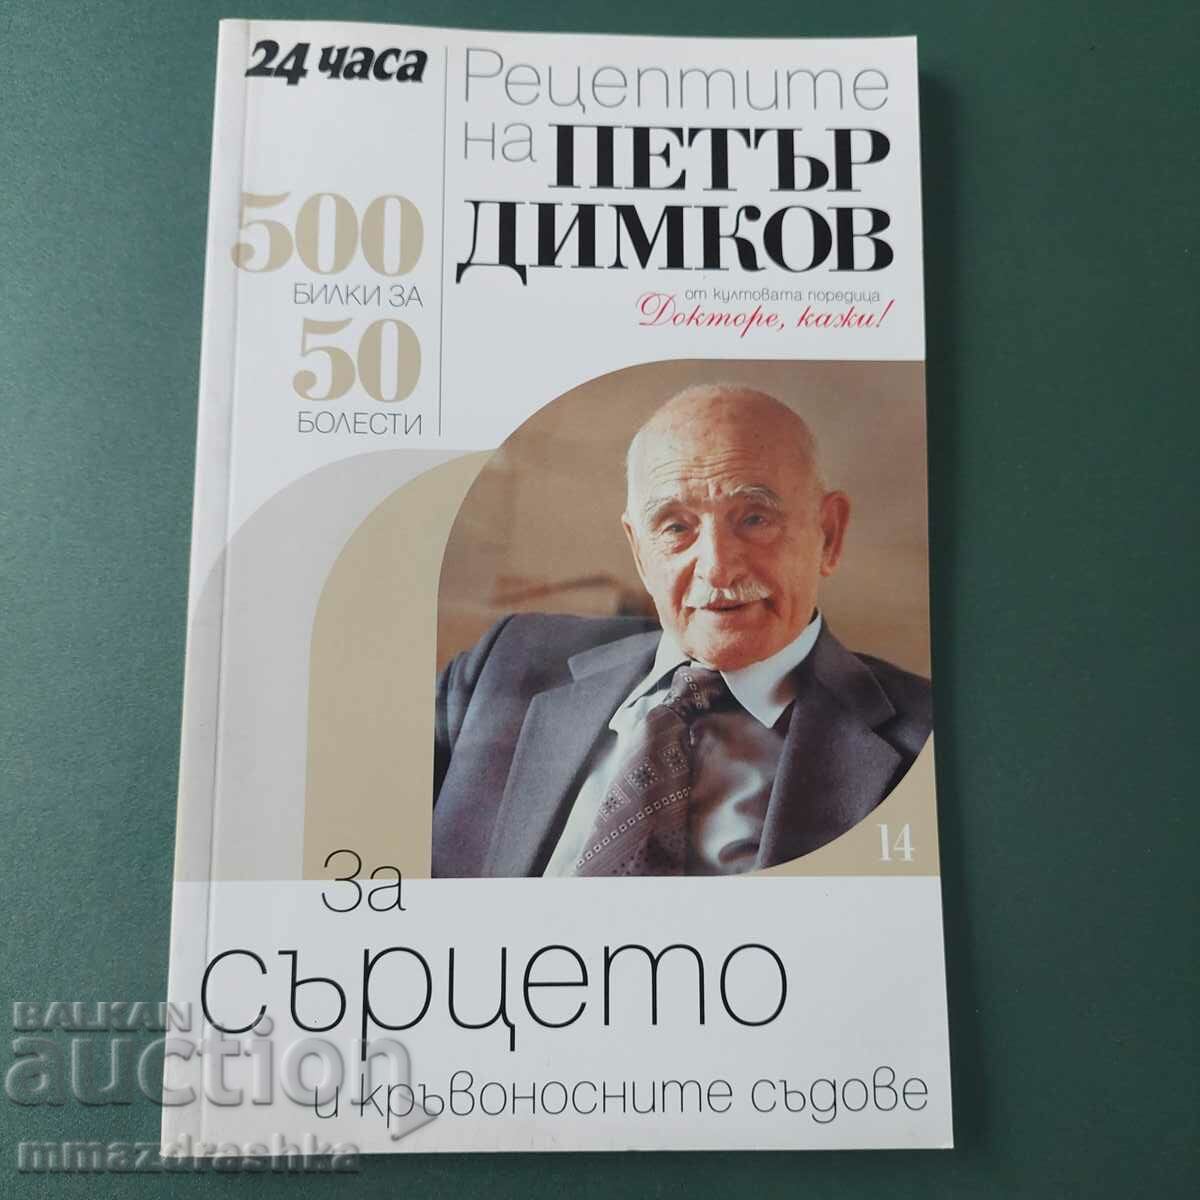 500 συνταγές για την καρδιά, Petar Dimkov